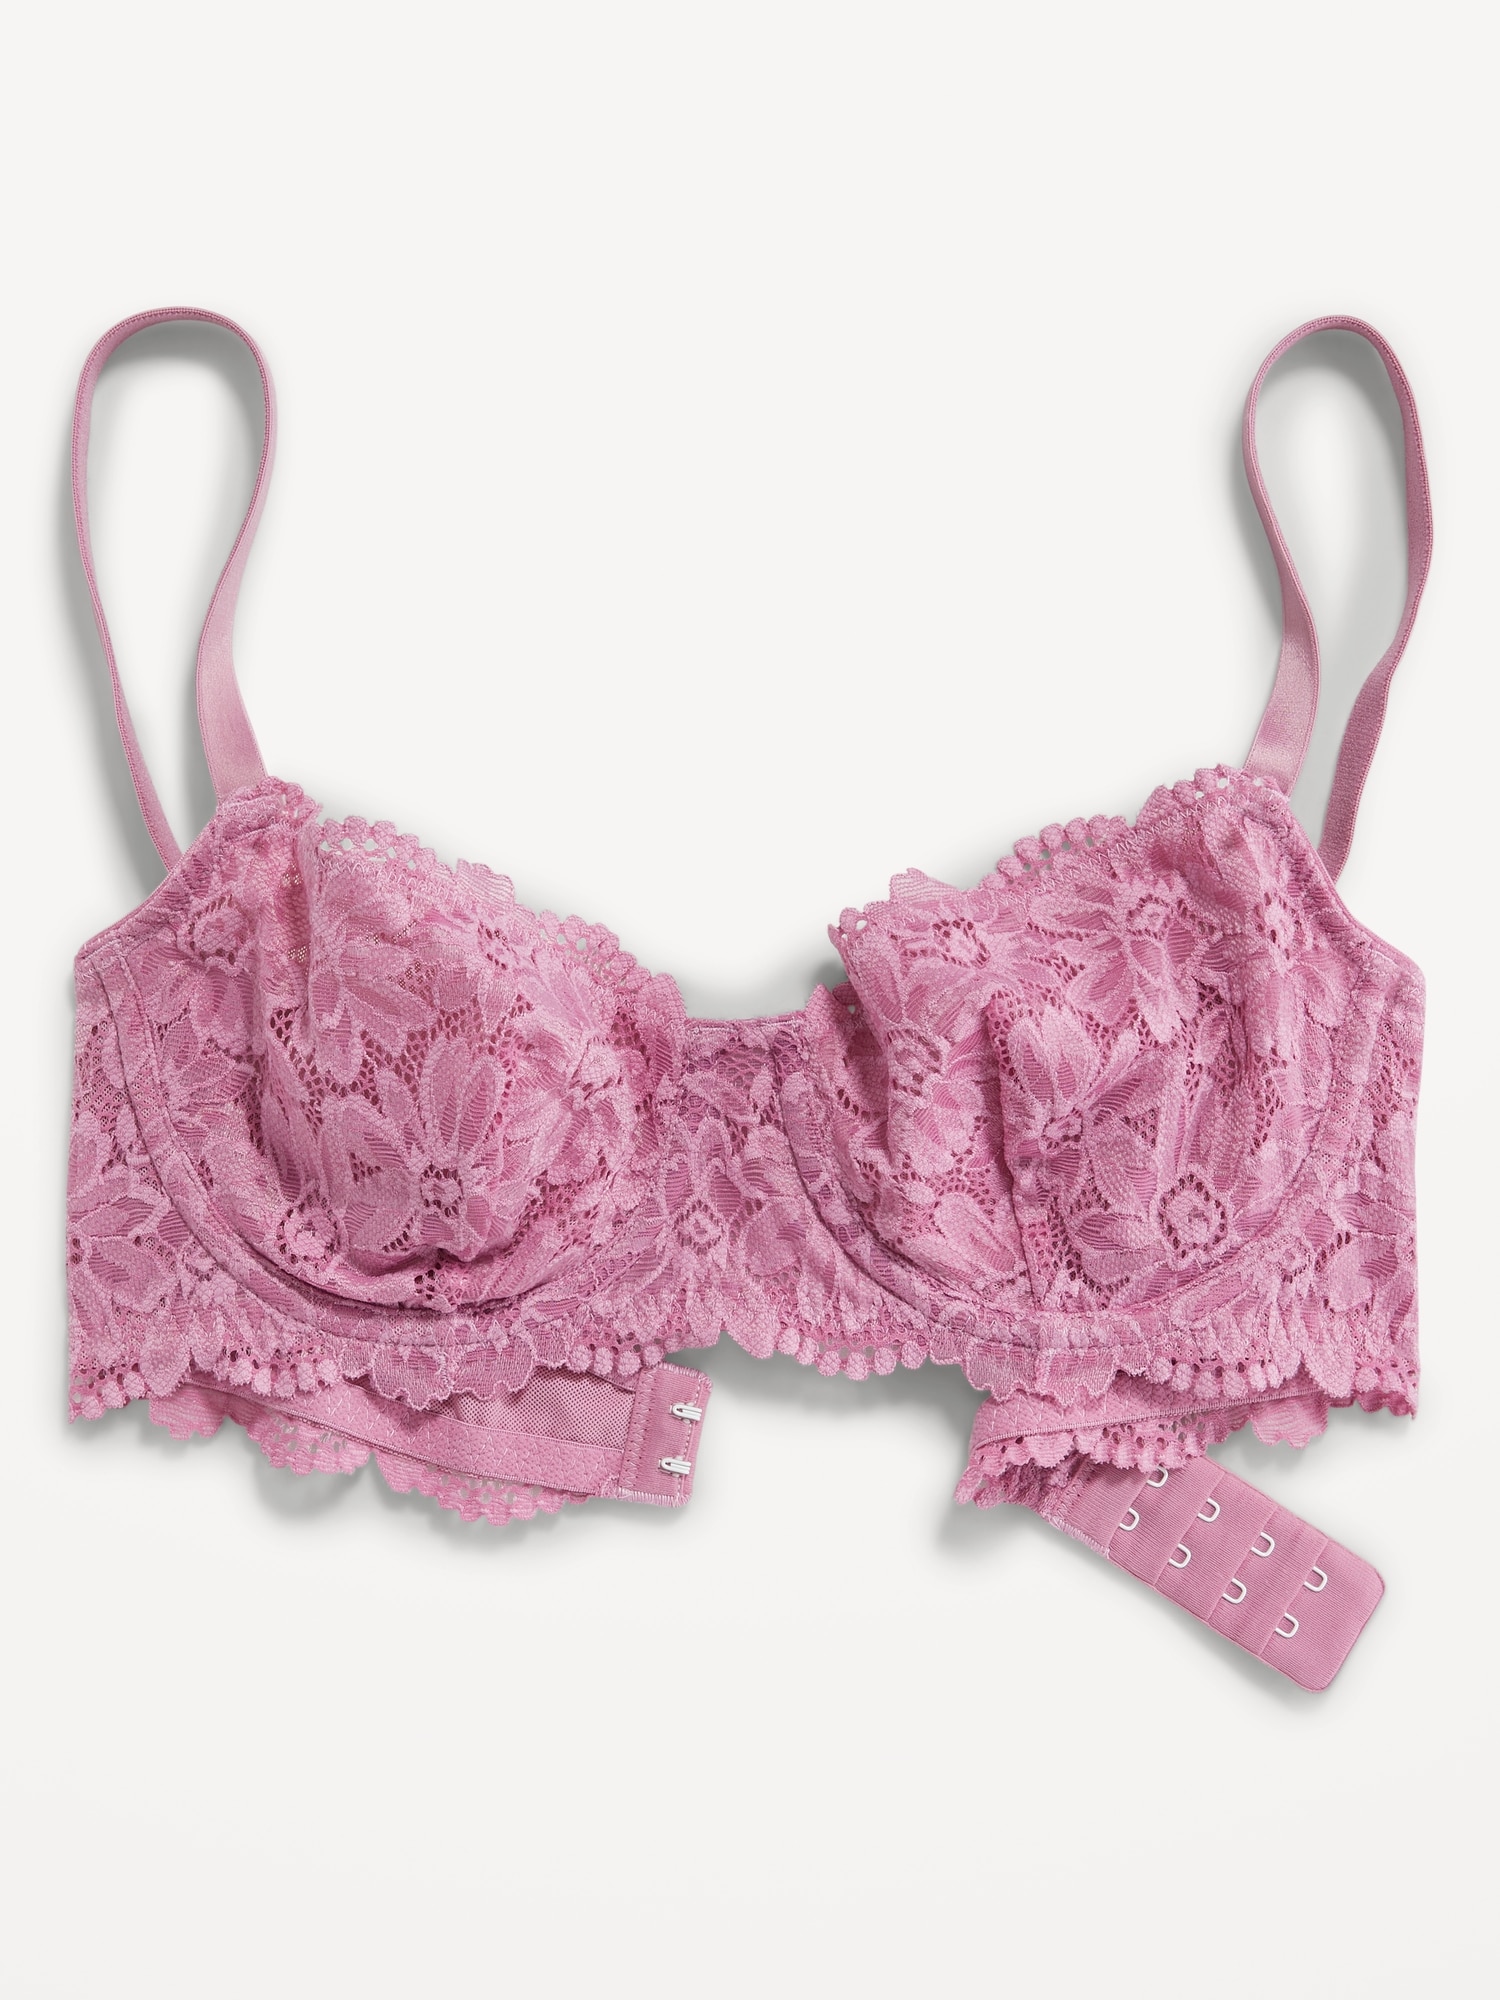 Women's Entice Unlined Underwire Lace Balconette Bra бюстгальтеры Цвет:  Sheer Lilac/Nylon; Размер: 38C купить недорого от 47 руб. в  интернет-магазине